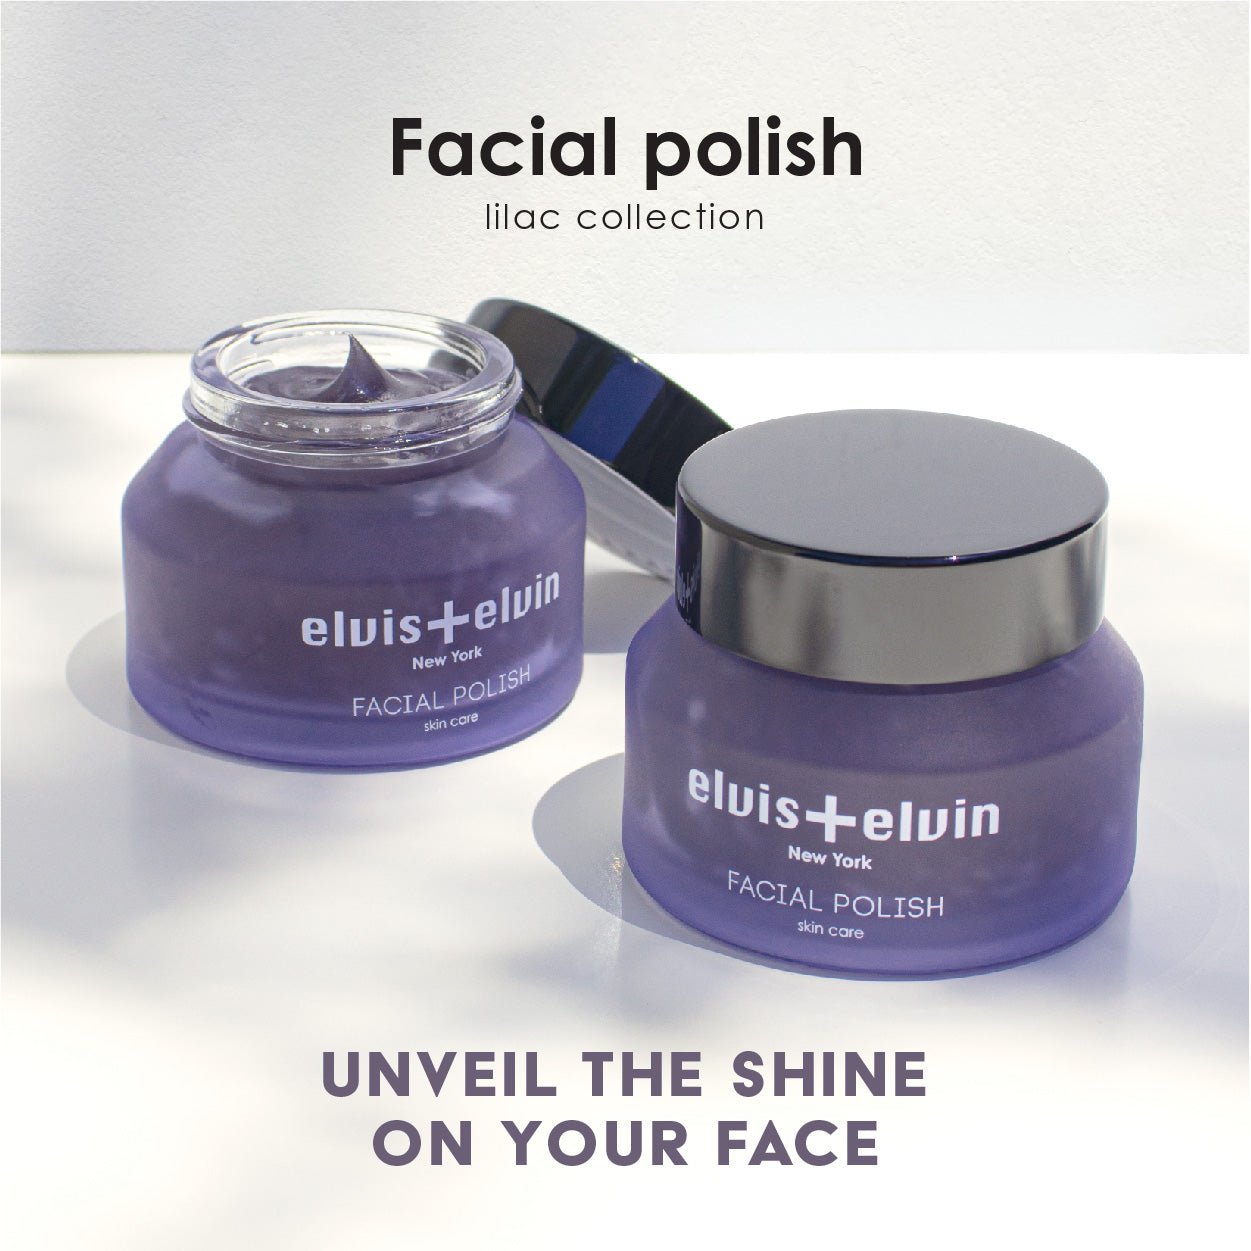 elvis+elvin Lilac Facial Polish 50ml elvis+elvin